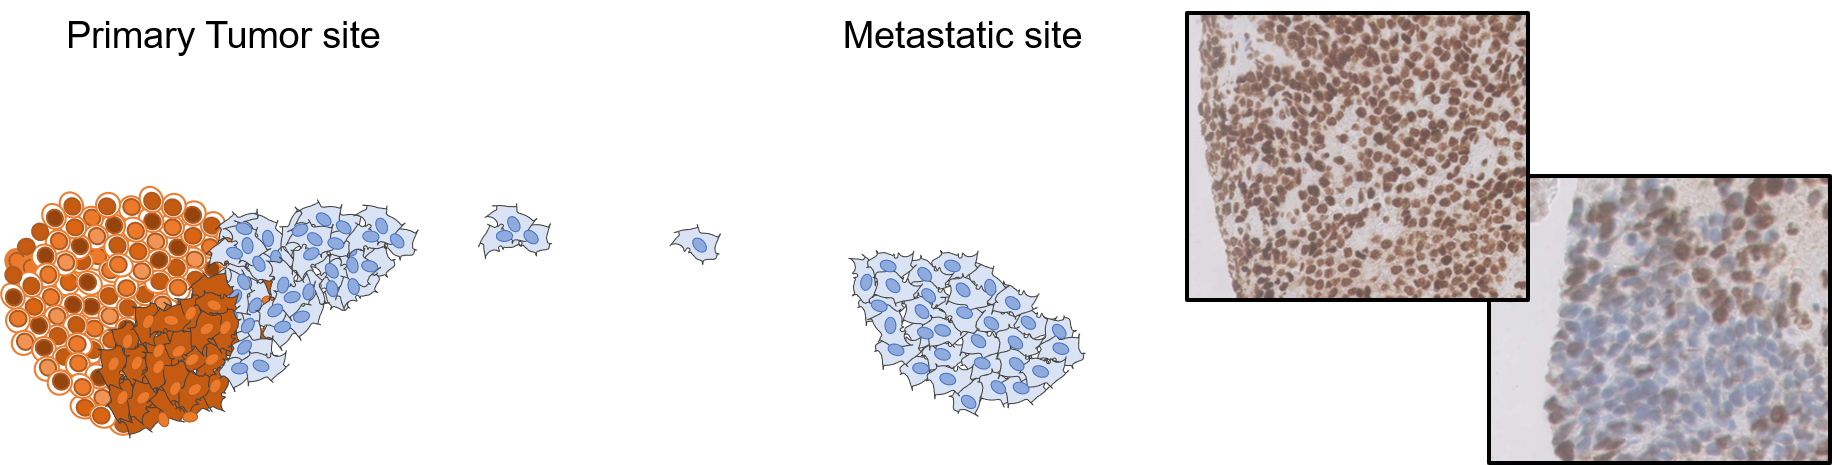 Grafische Darstellung von Tumorzellen in verschiedenen Mutationsstadien.